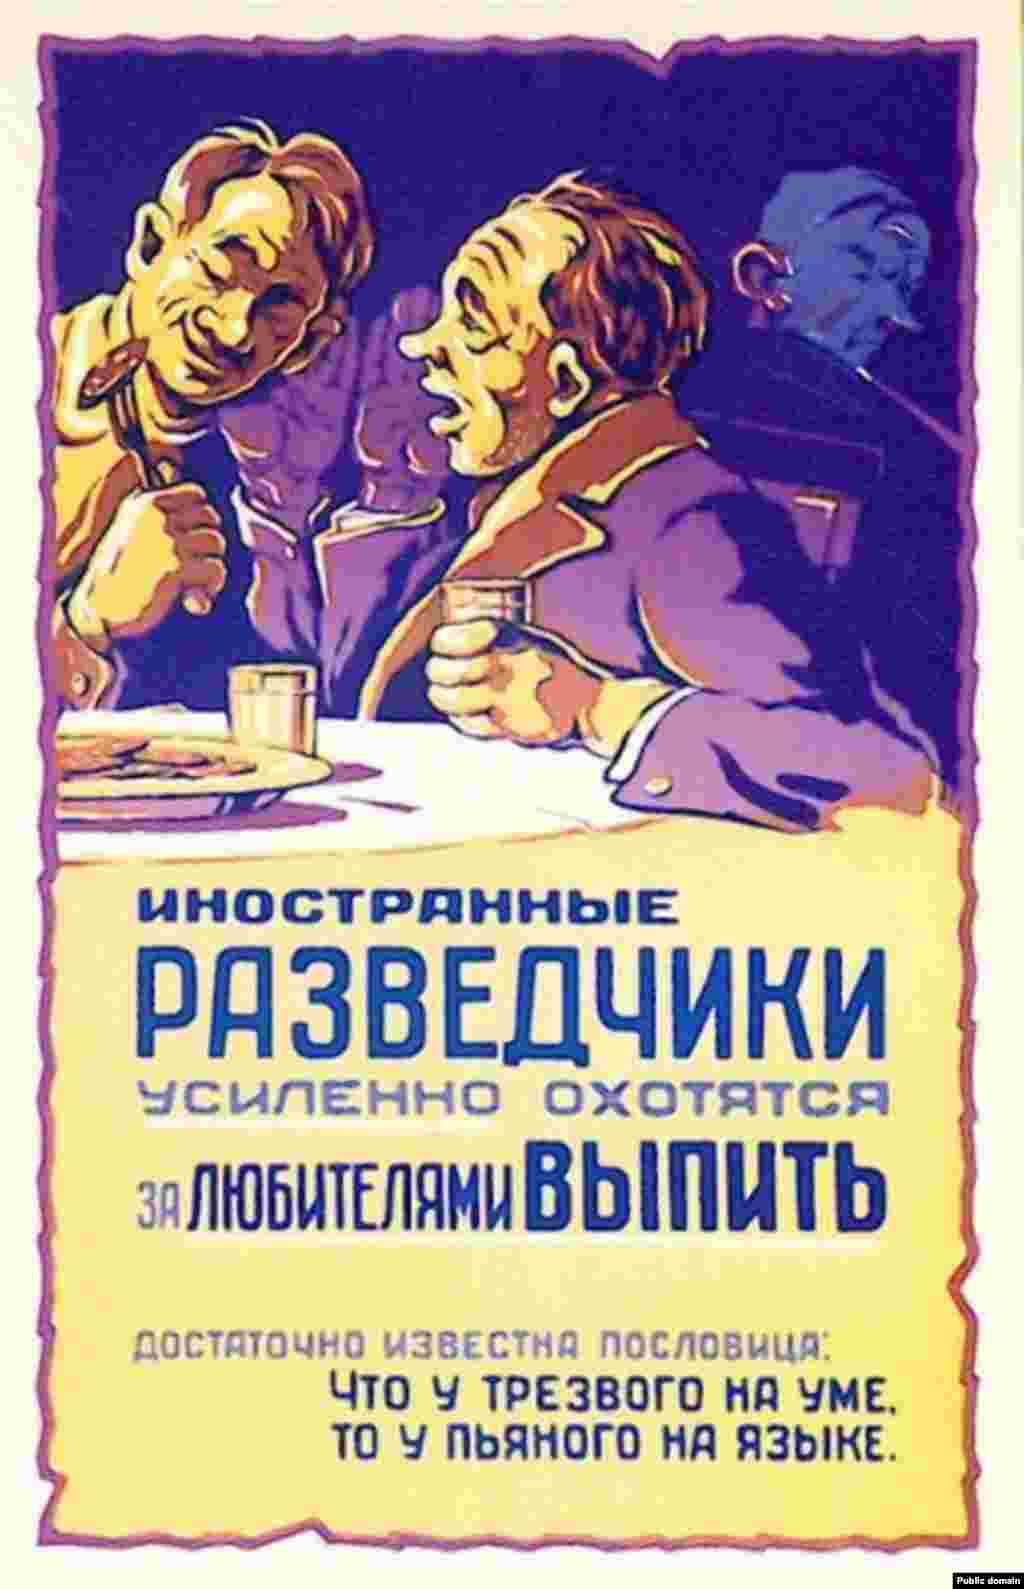 Плакат 1959 року попереджає, що &laquo;іноземні шпигуни полюють на любителів випити&raquo;